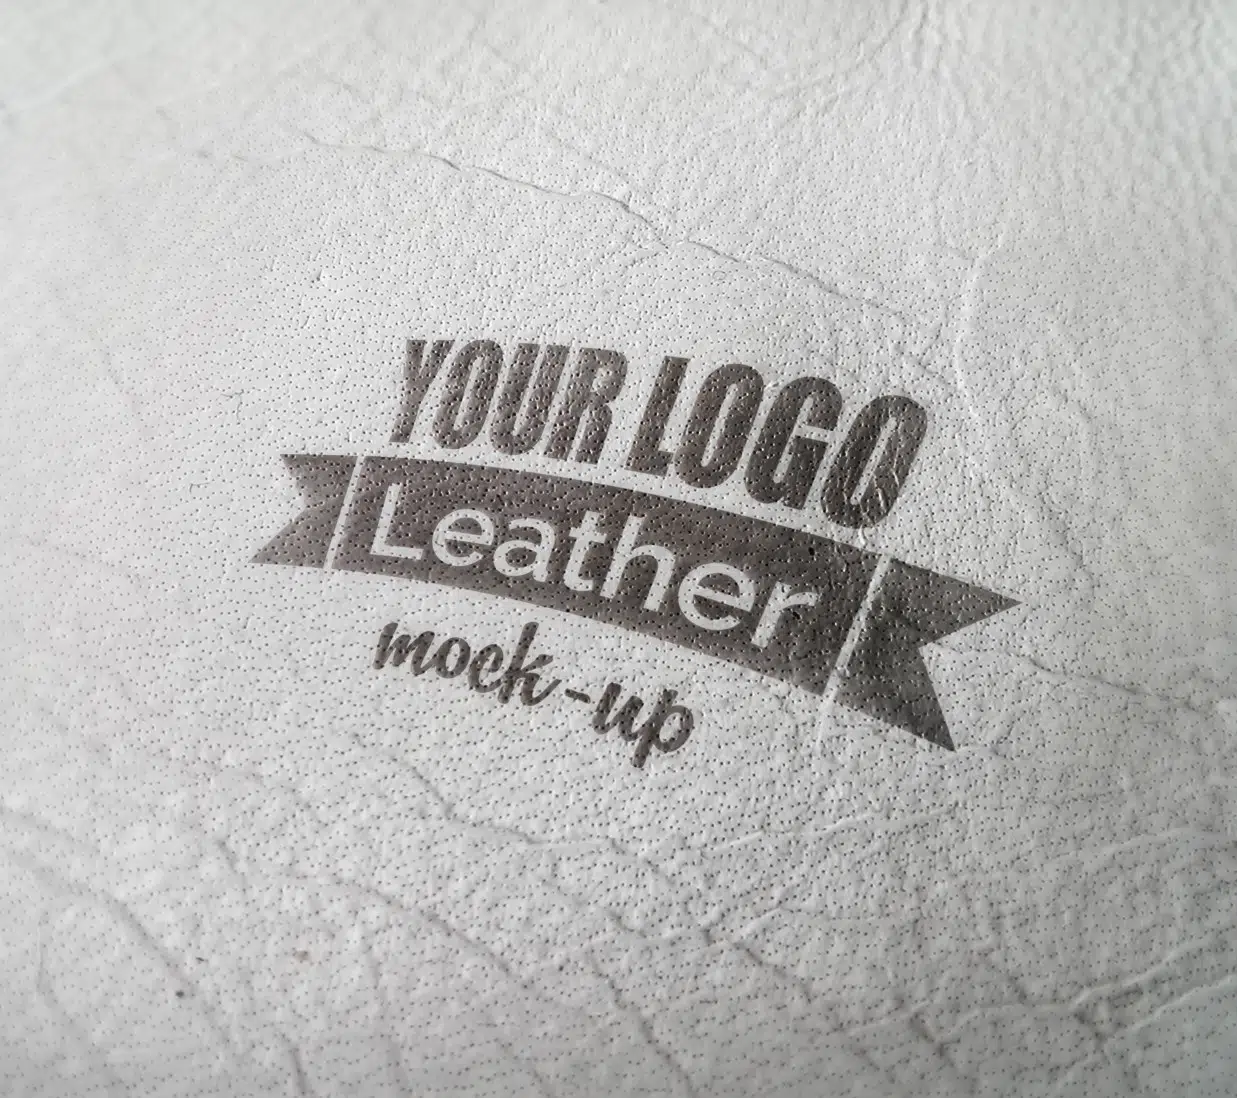 192-photorealistic-leather-mock-up